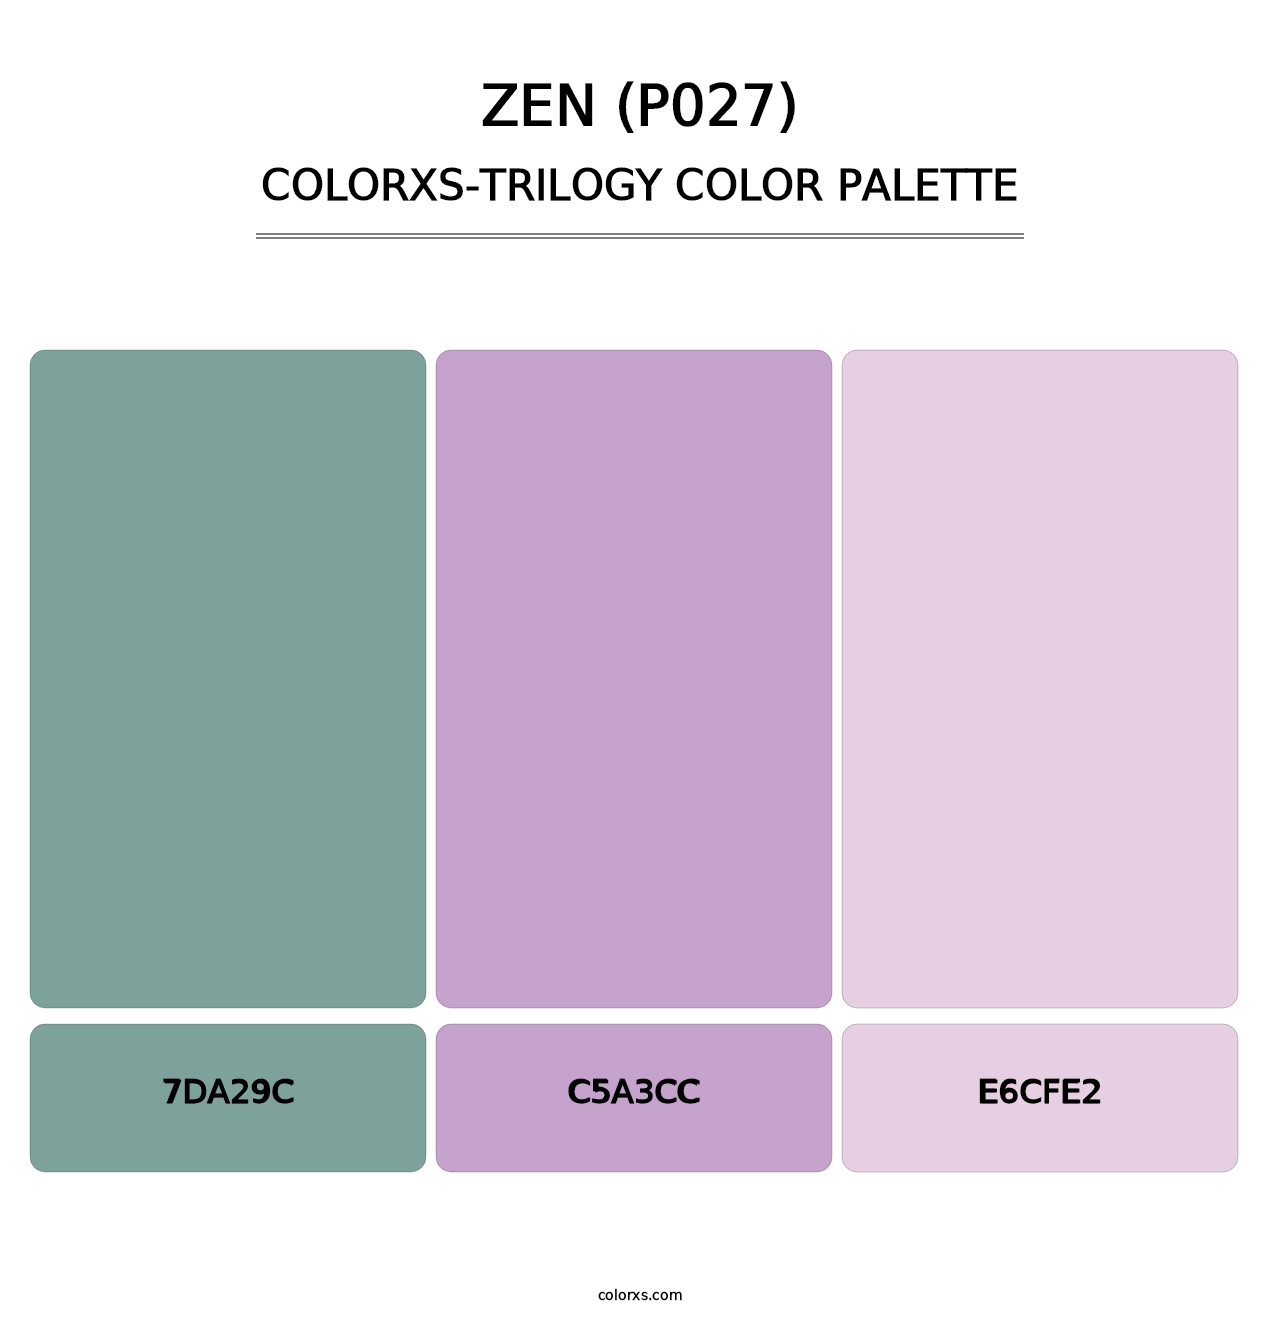 Zen (P027) - Colorxs Trilogy Palette